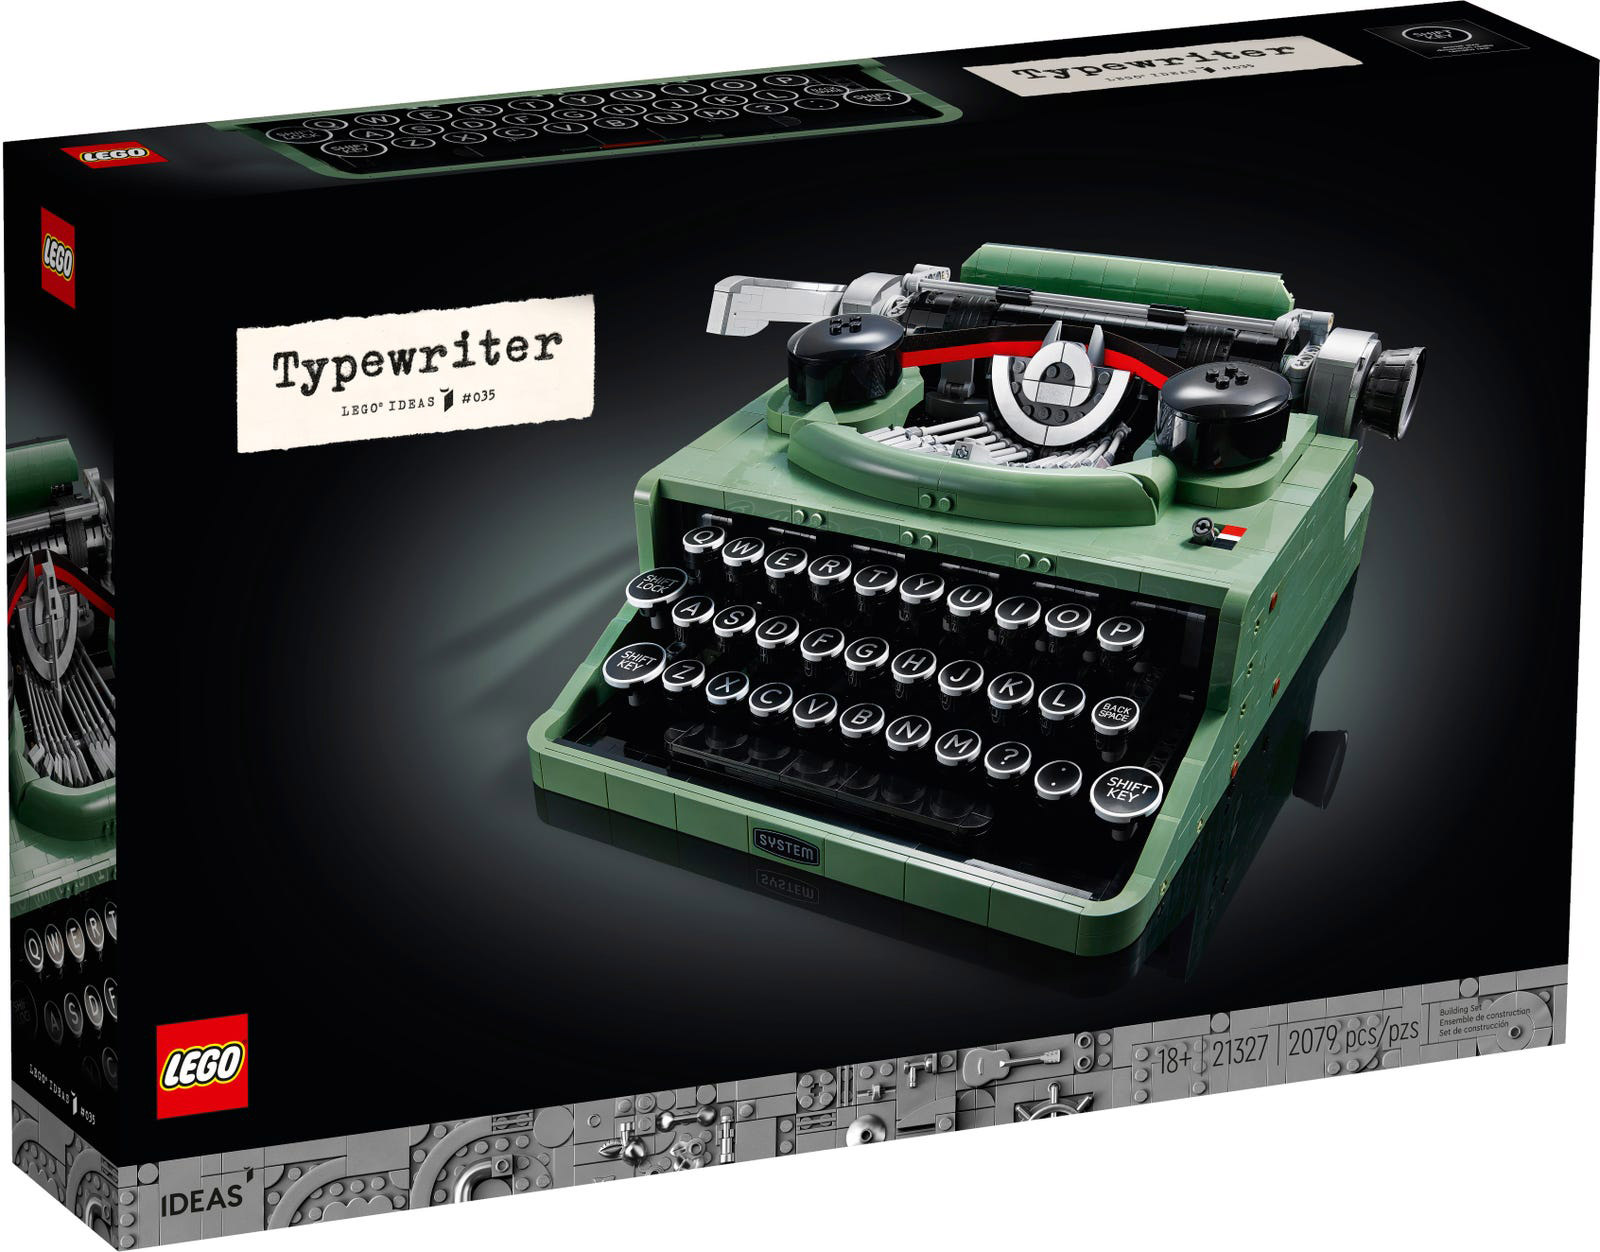 LEGO Ideas 21327 pas cher, La machine à écrire